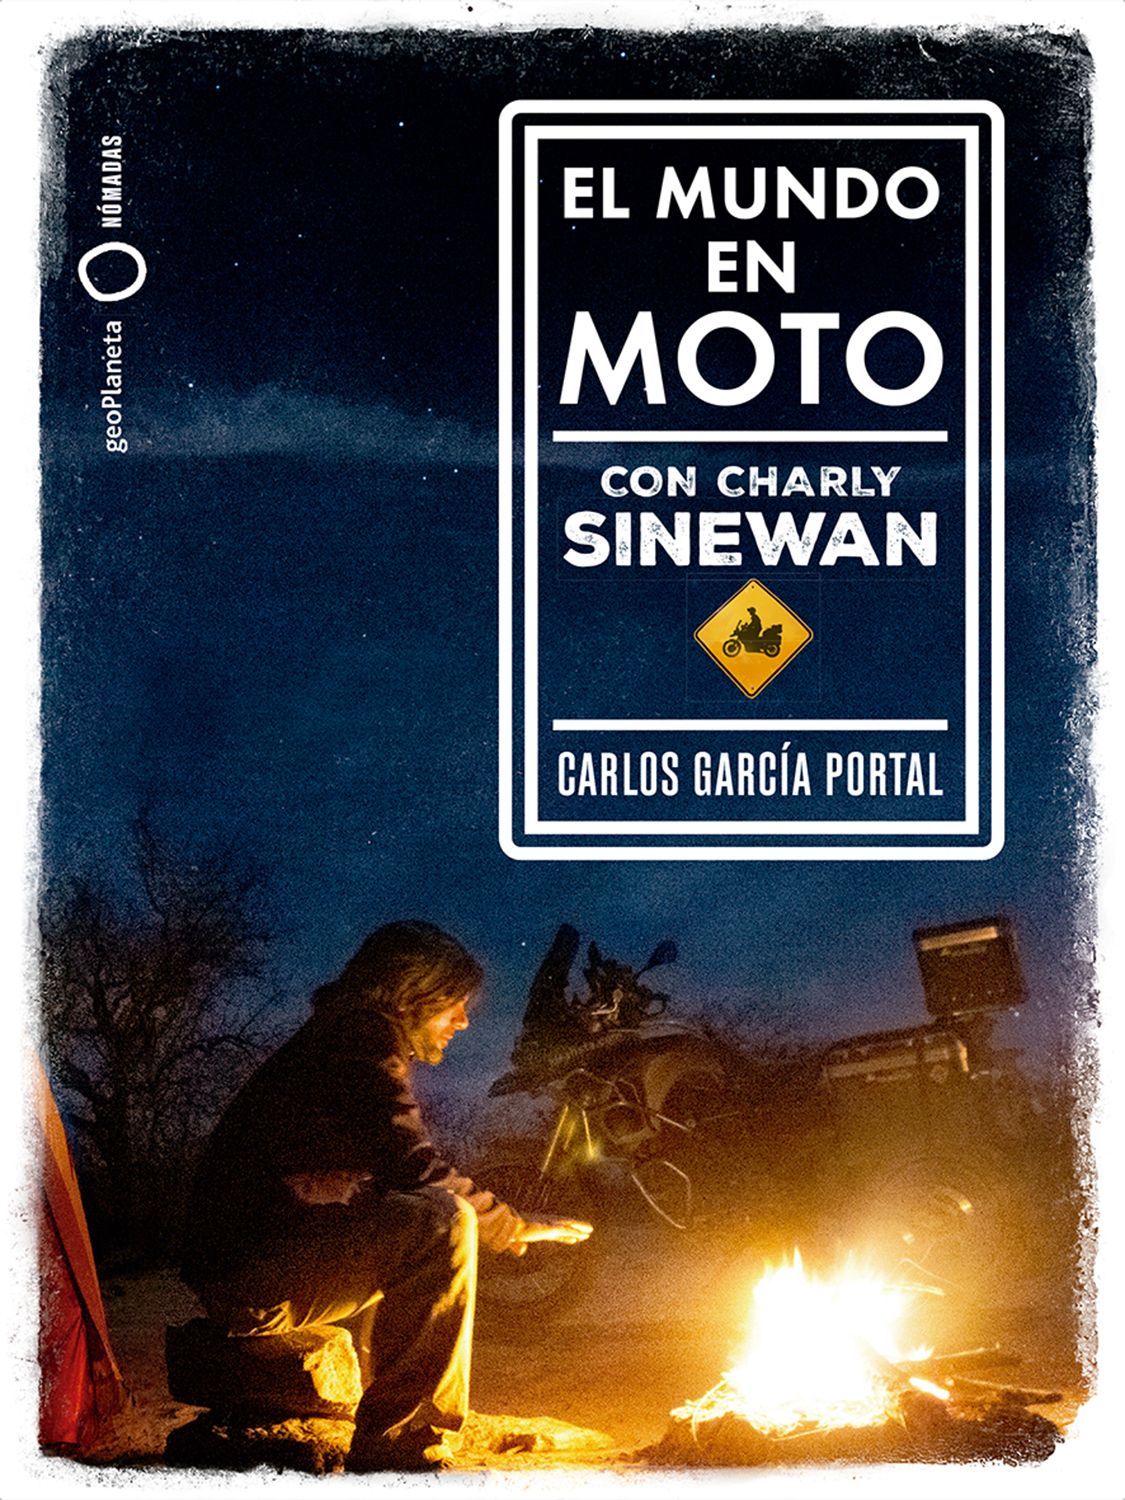 El mundo en moto con Charly Sinewan, una guía con todo lo necesario para viajar en este vehículo